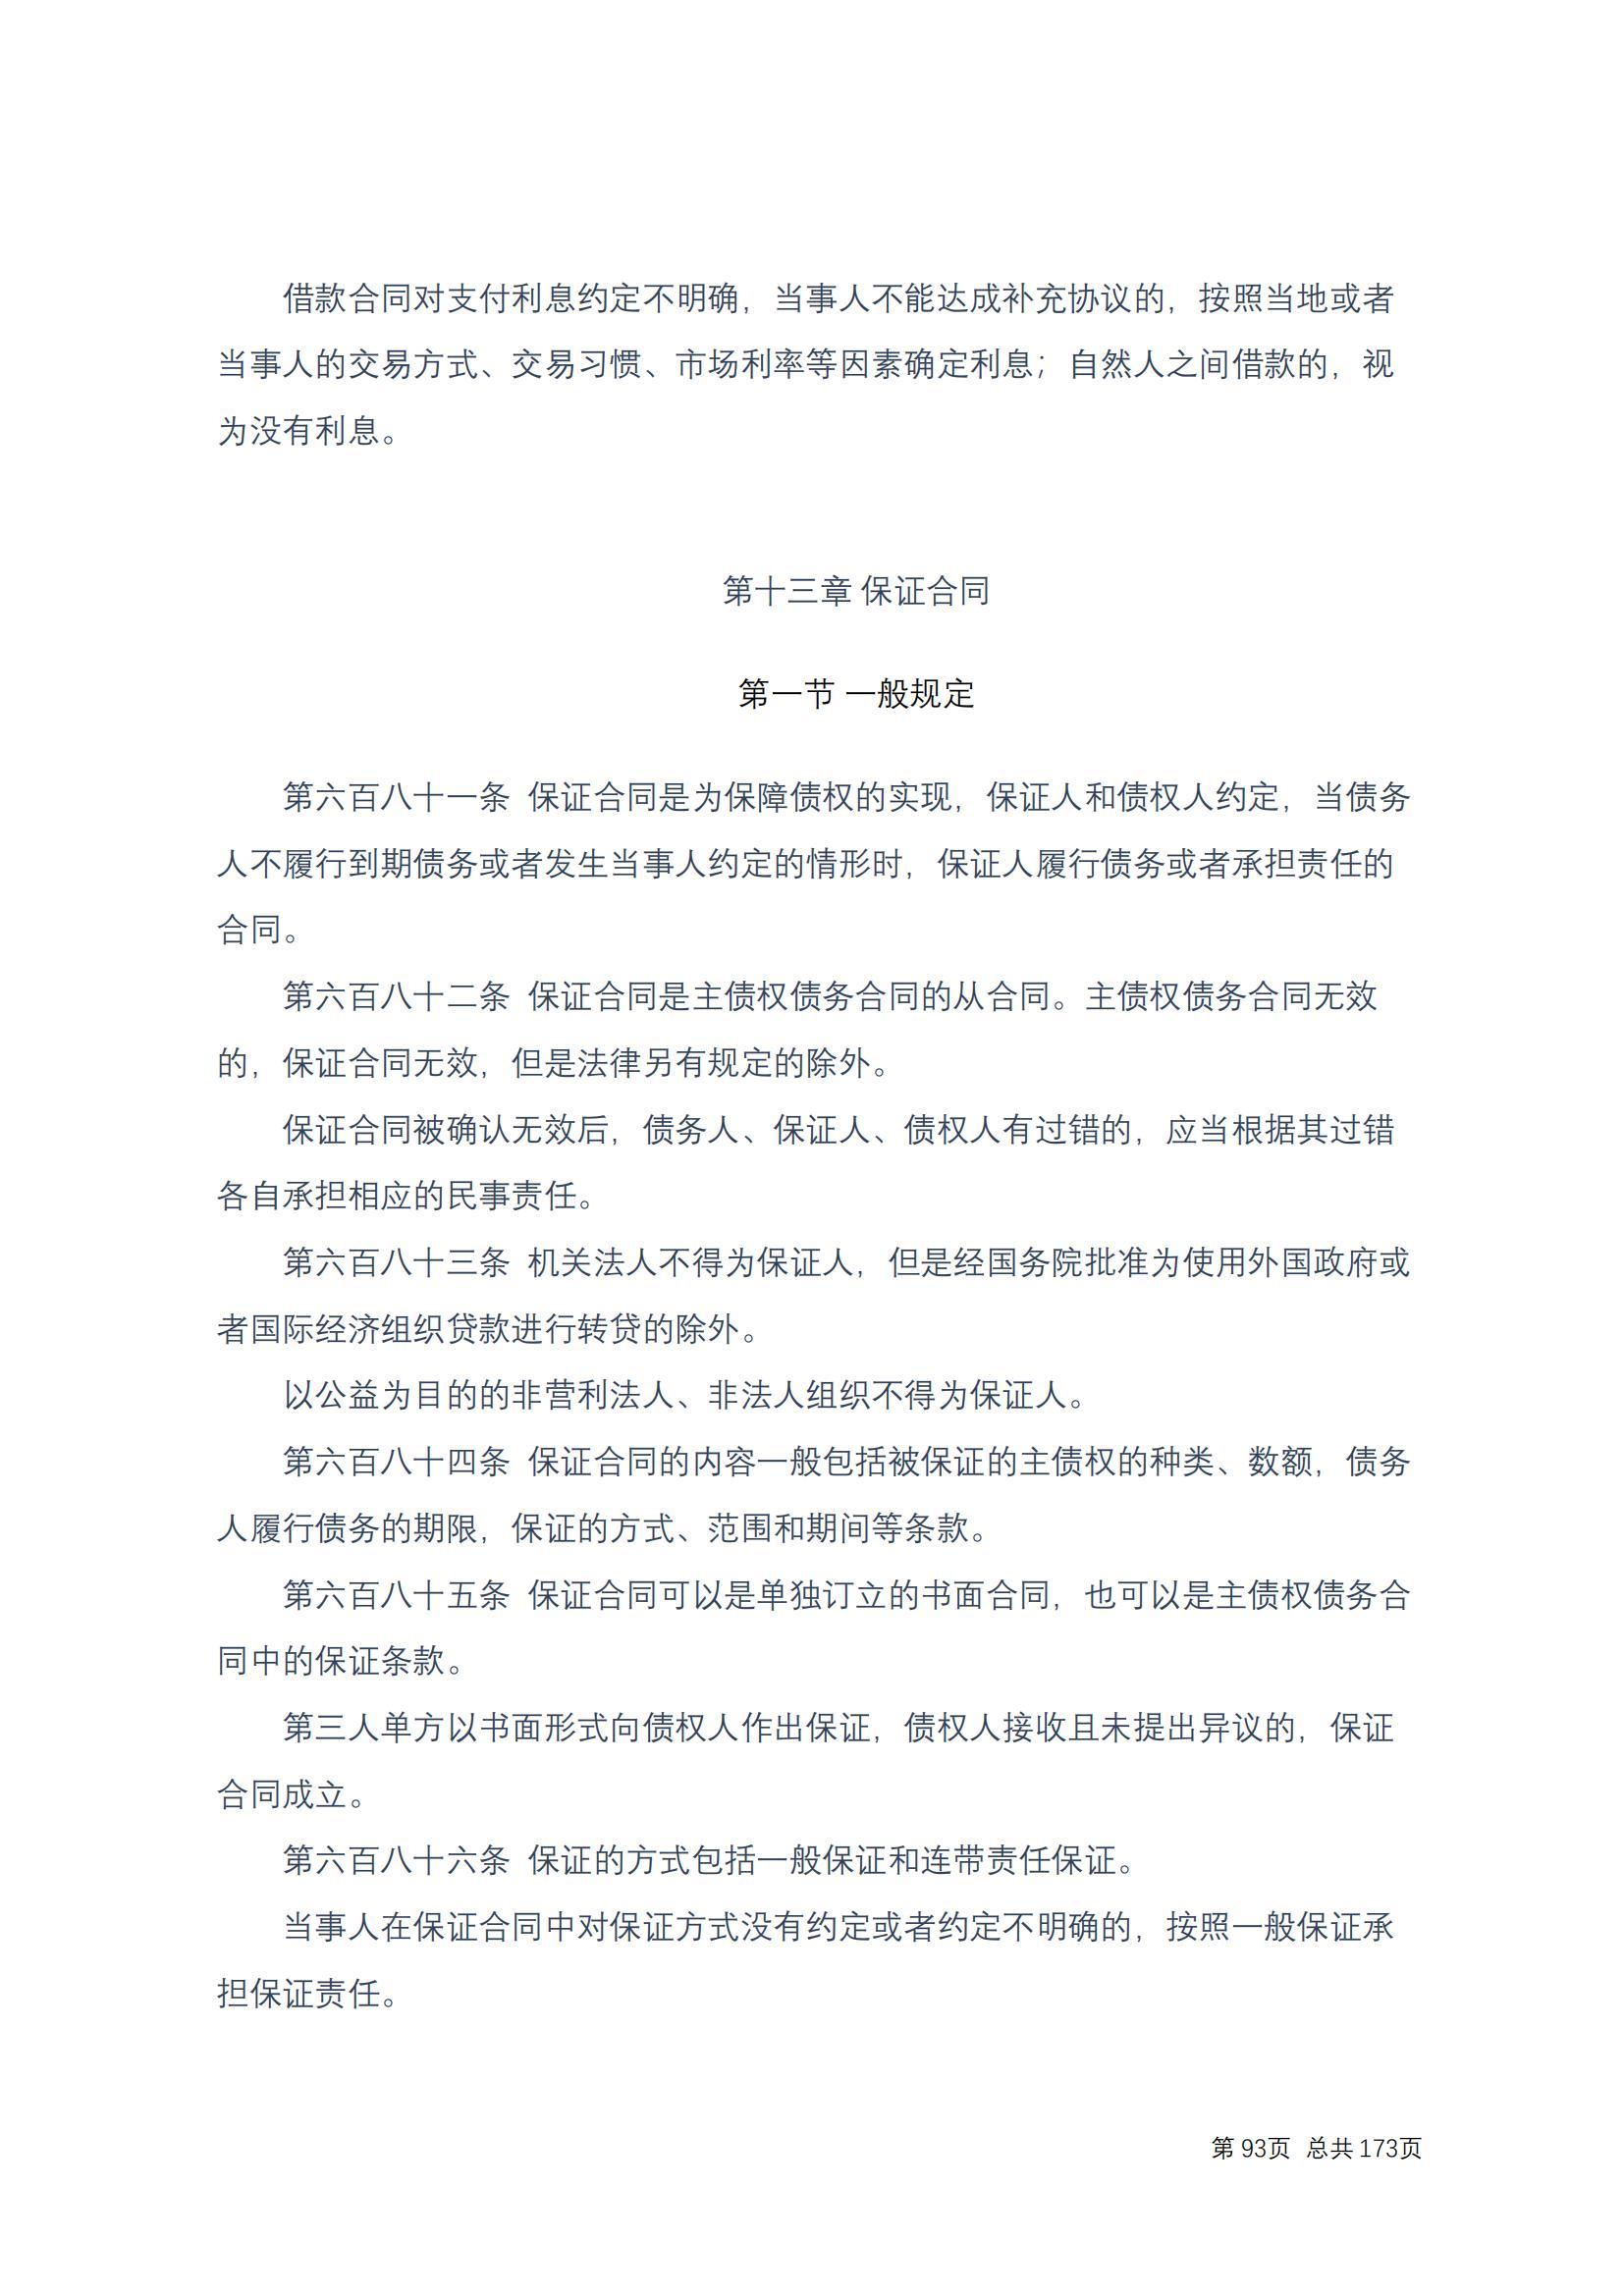 中华人民共和国民法典 修改过_92